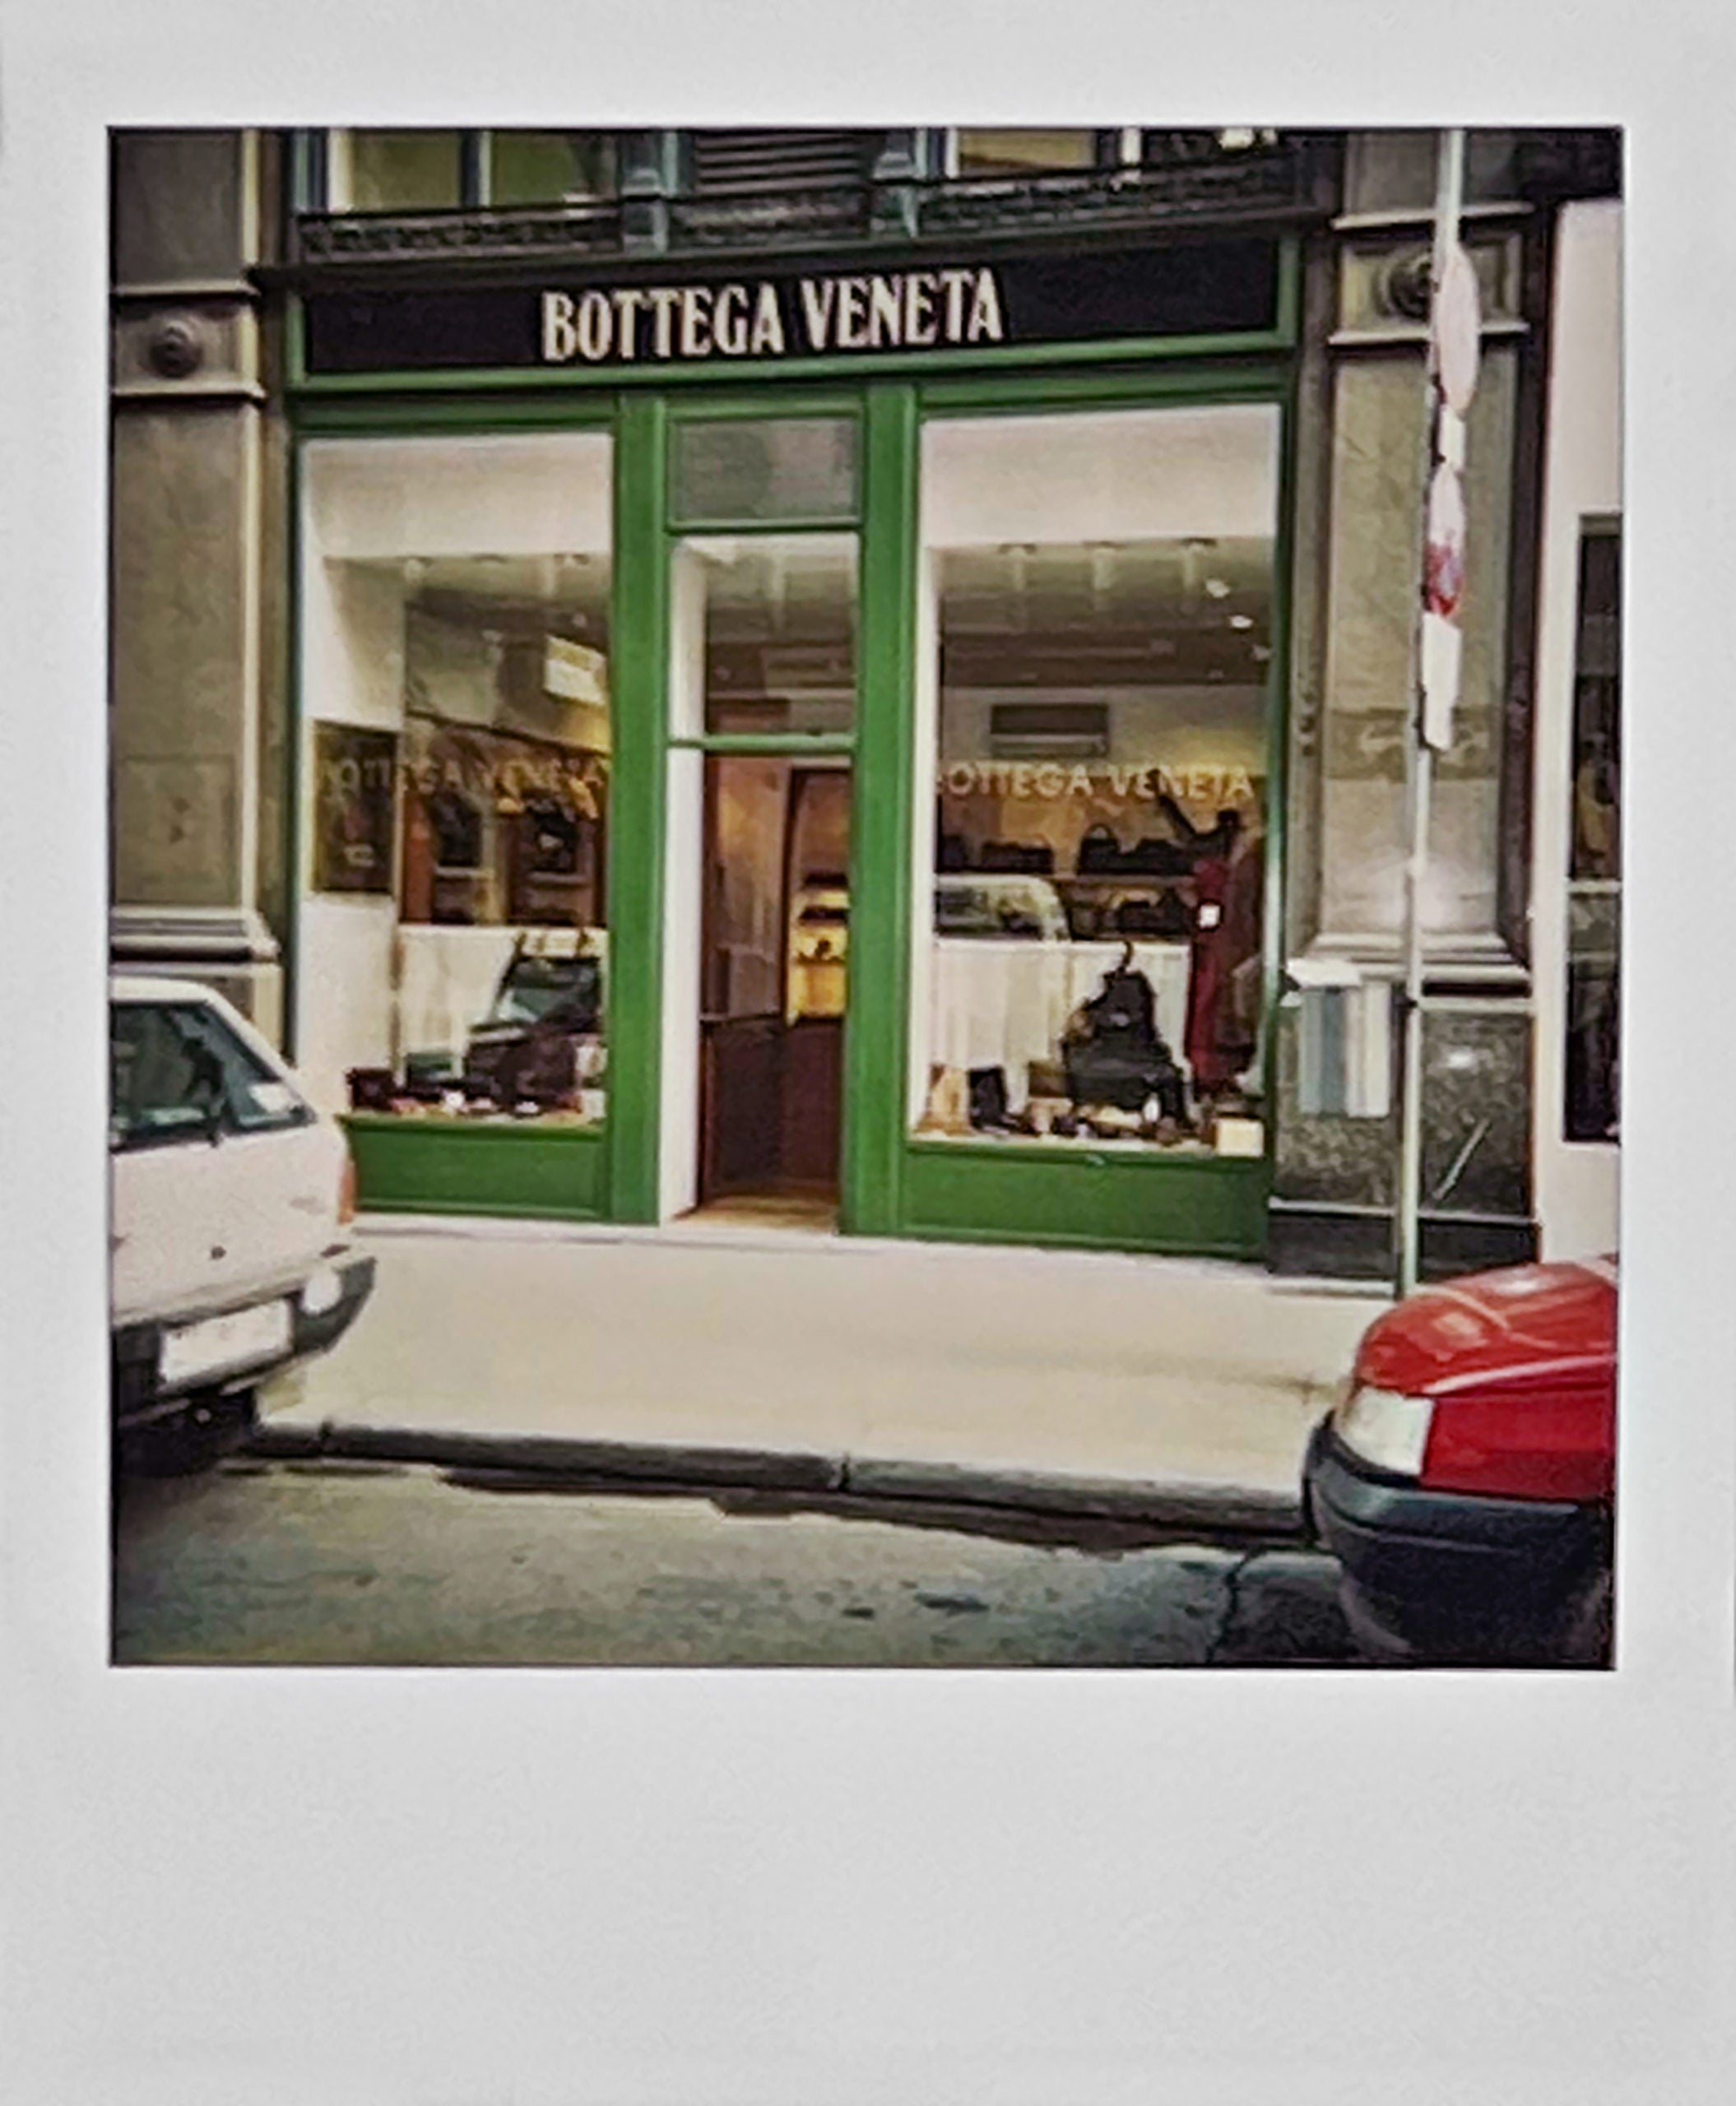 BOTTEGA VENETA: A JOURNEY OF LUXURY AND CRAFTSMANSHIP